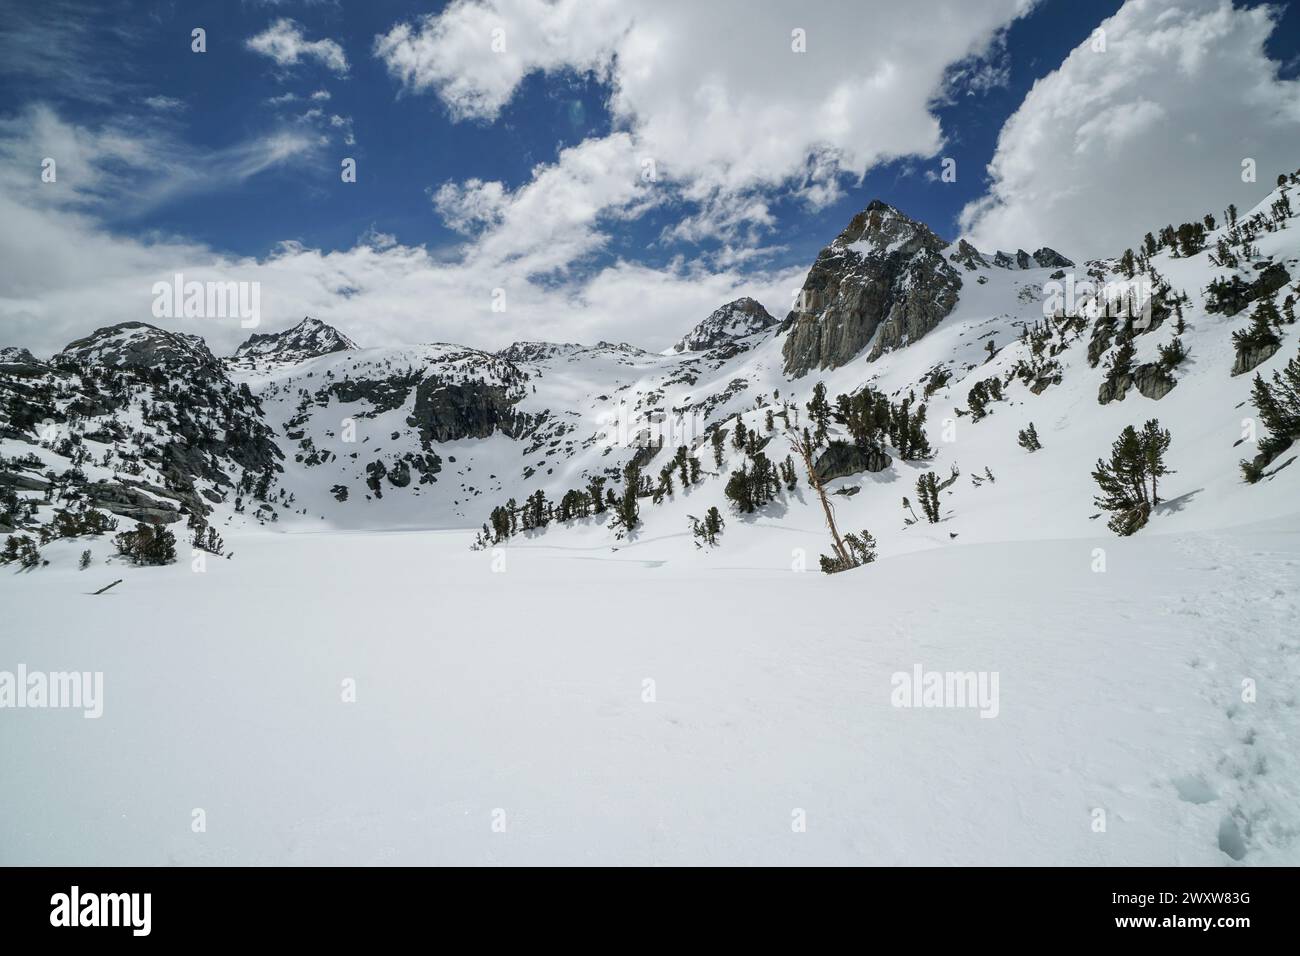 Pacific Crest Trail. Une chaîne de montagnes enneigée avec un ciel bleu clair. Le ciel est parsemé de nuages Banque D'Images